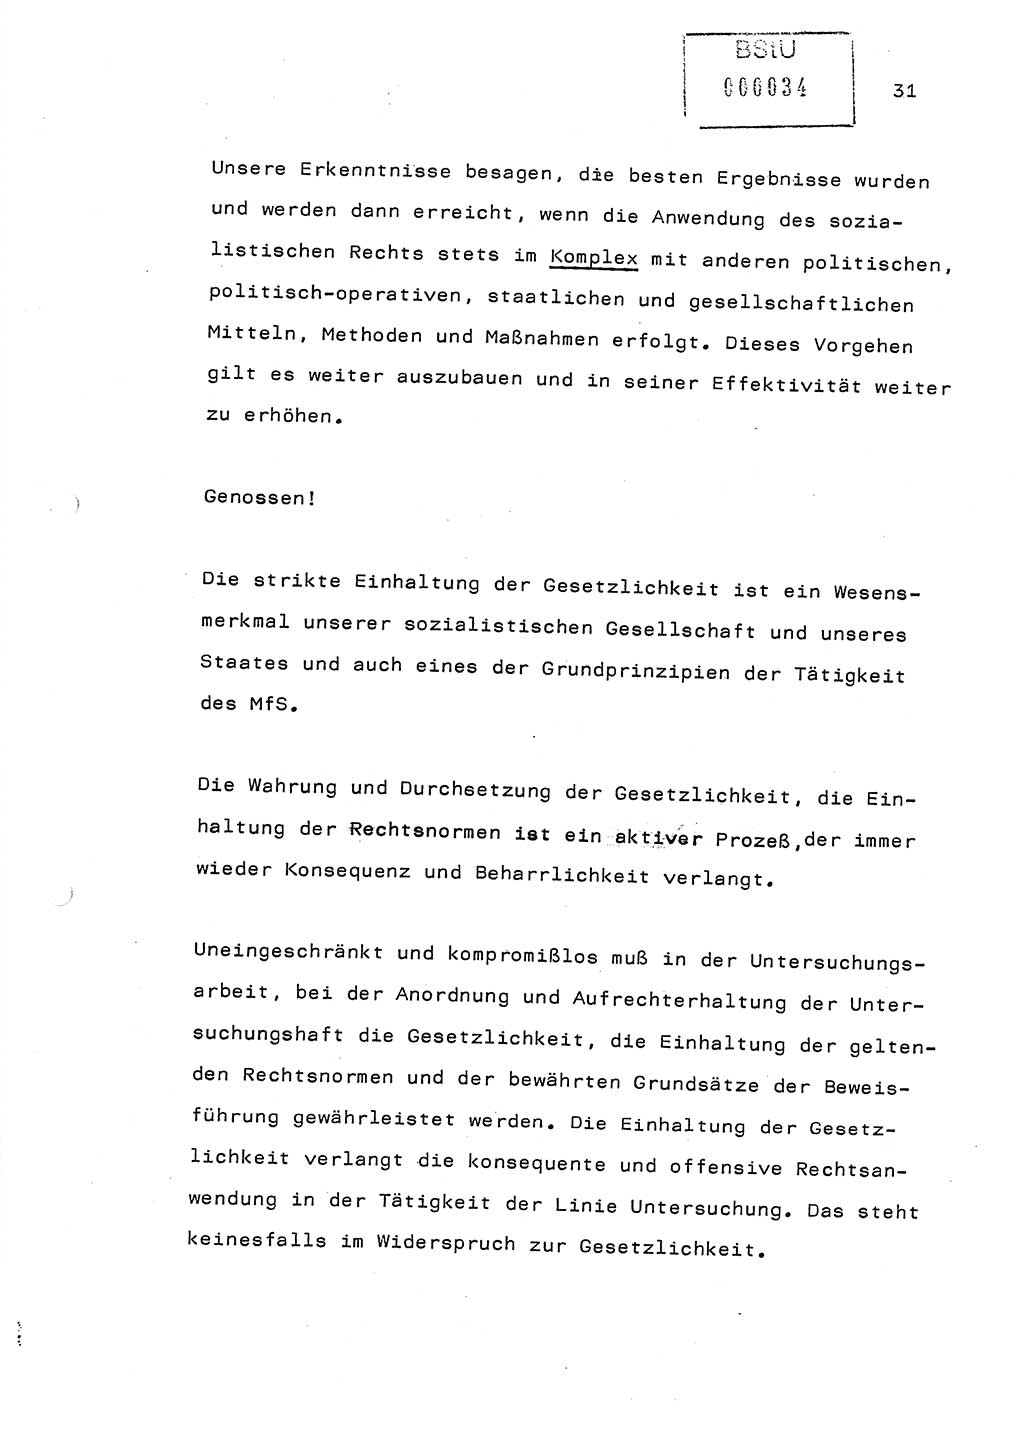 Referat (Generaloberst Erich Mielke) auf der Zentralen Dienstkonferenz am 24.5.1979 [Ministerium für Staatssicherheit (MfS), Deutsche Demokratische Republik (DDR), Der Minister], Berlin 1979, Seite 31 (Ref. DK DDR MfS Min. /79 1979, S. 31)